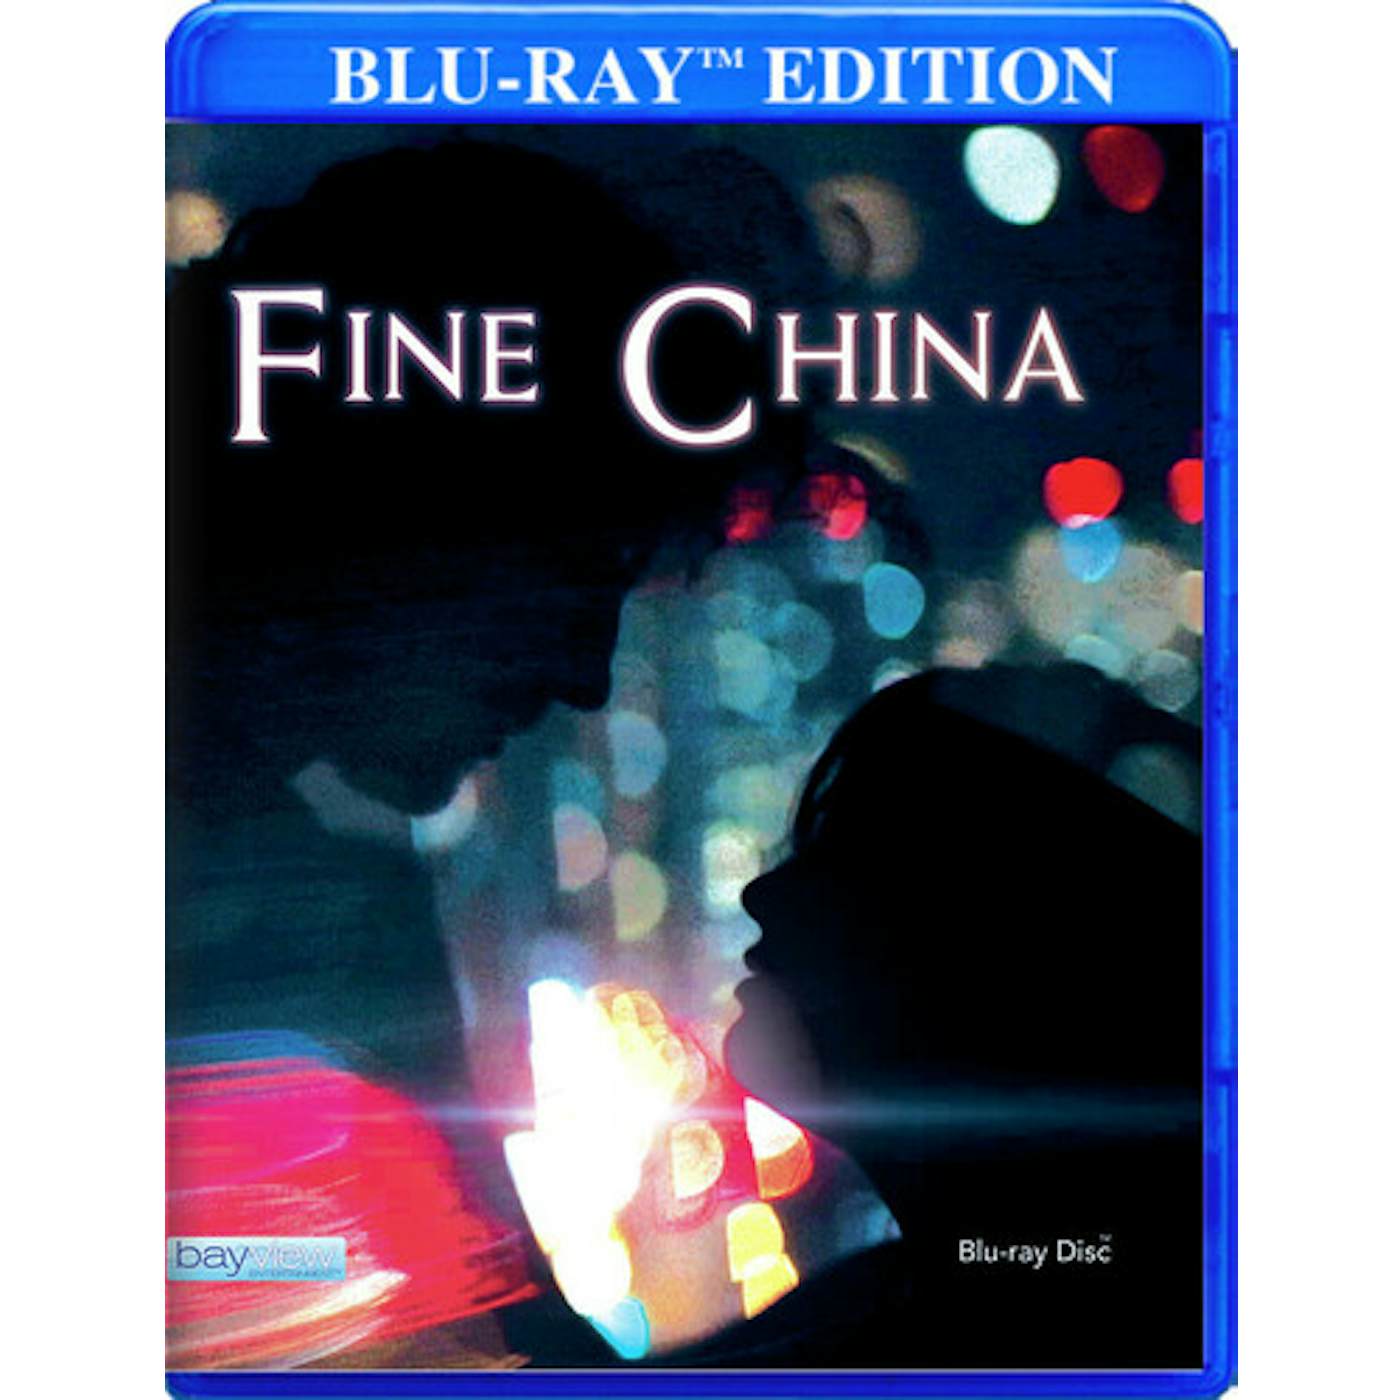 FINE CHINA Blu-ray